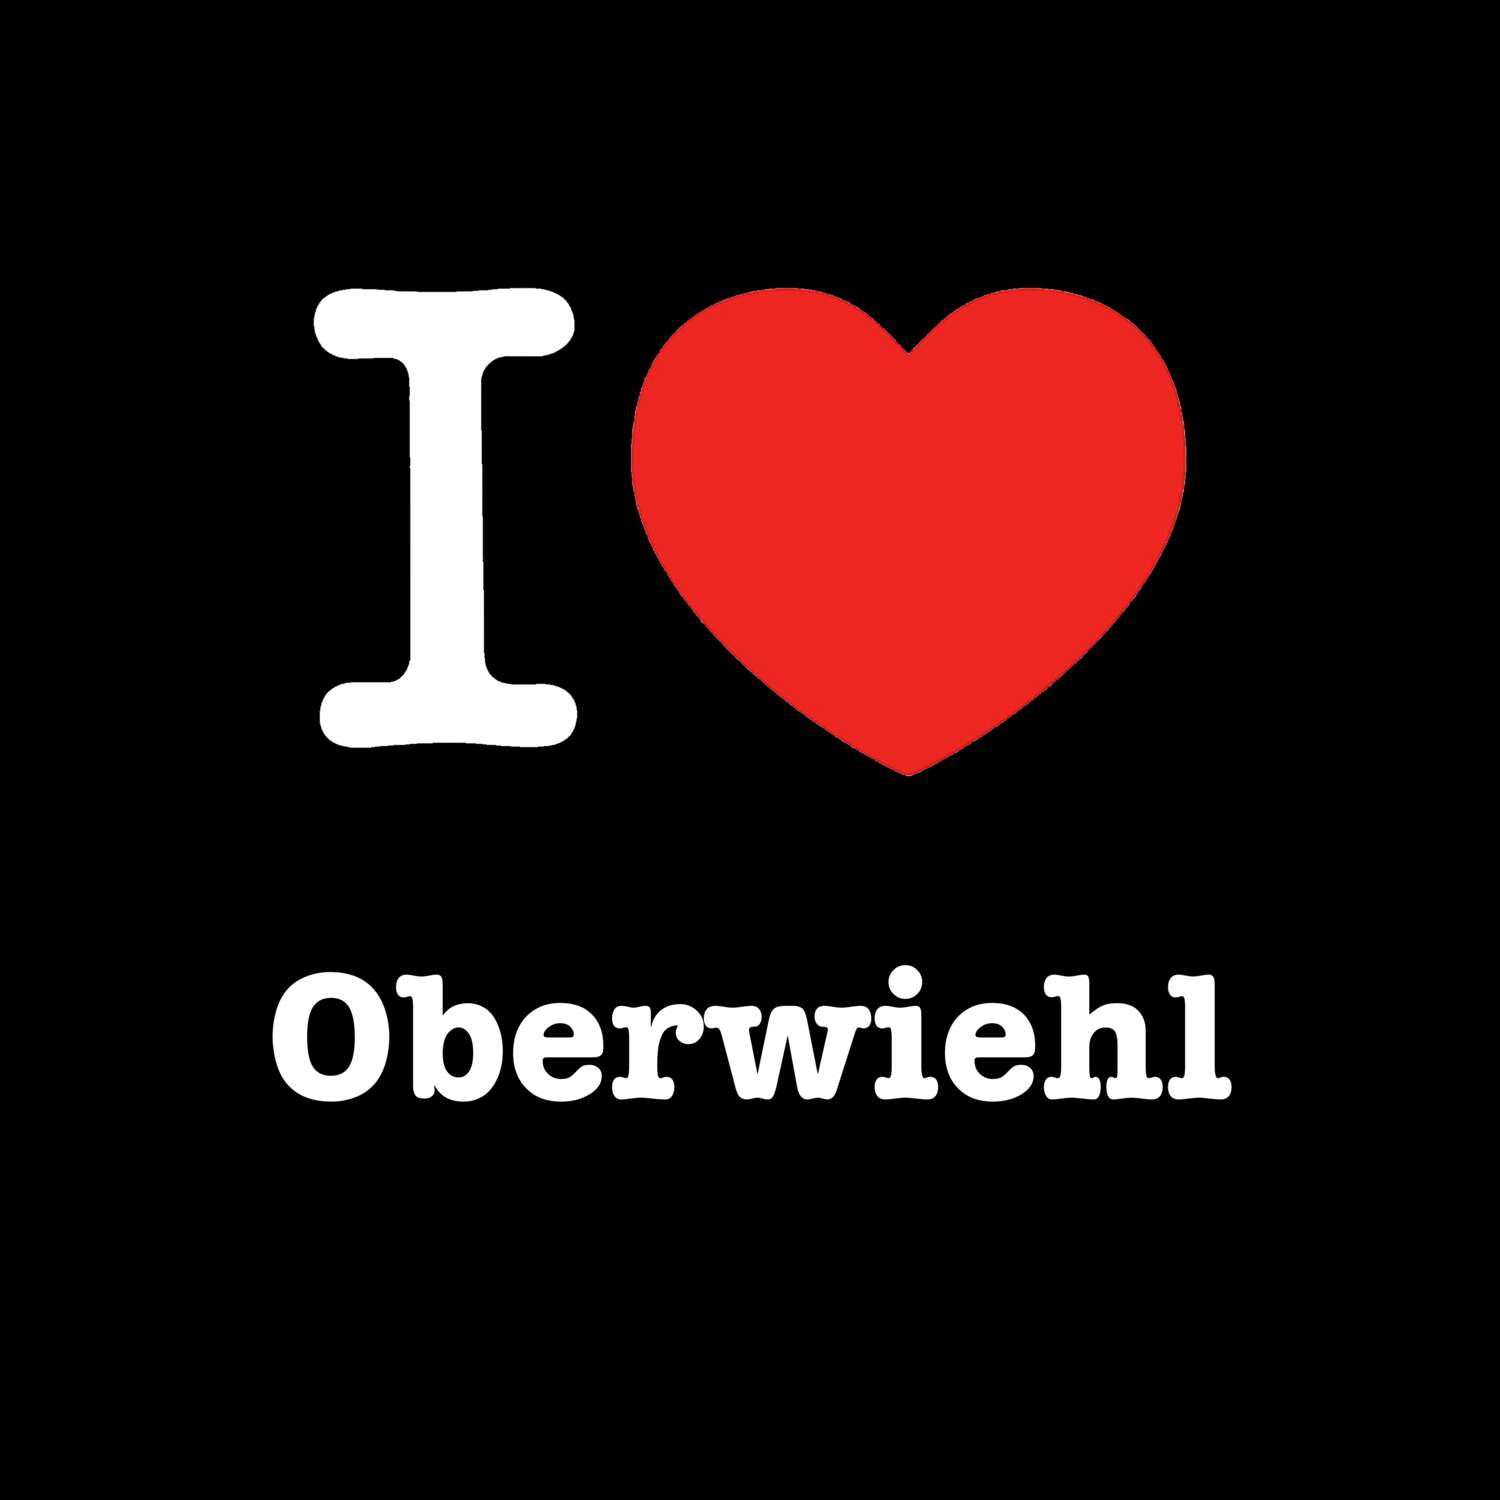 Oberwiehl T-Shirt »I love«